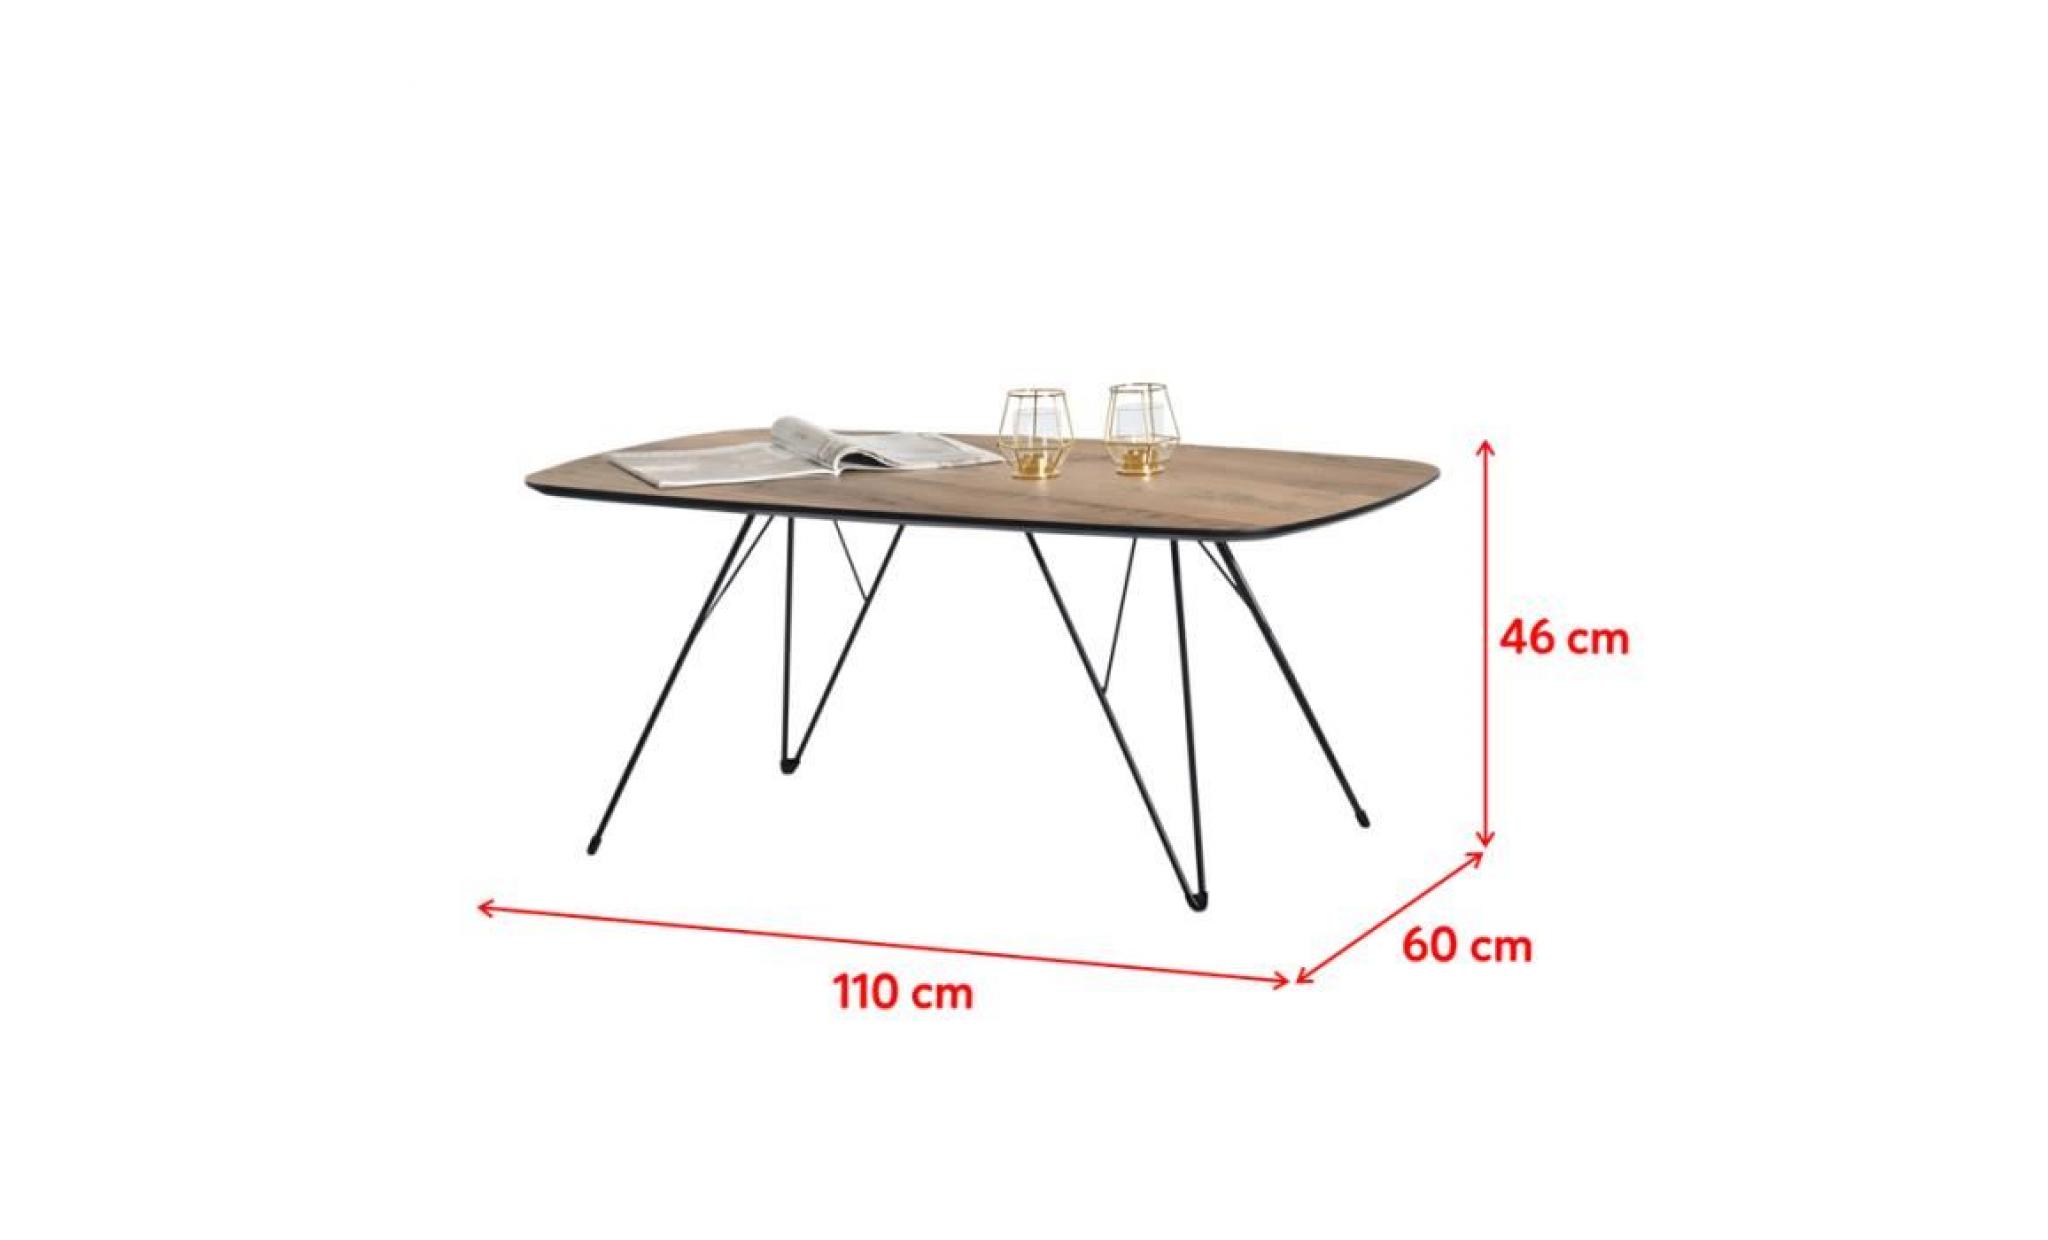 table basse design / table basse vintage   rubis   110x60 cm   béton / noir   pieds métalliques   style vintage pas cher